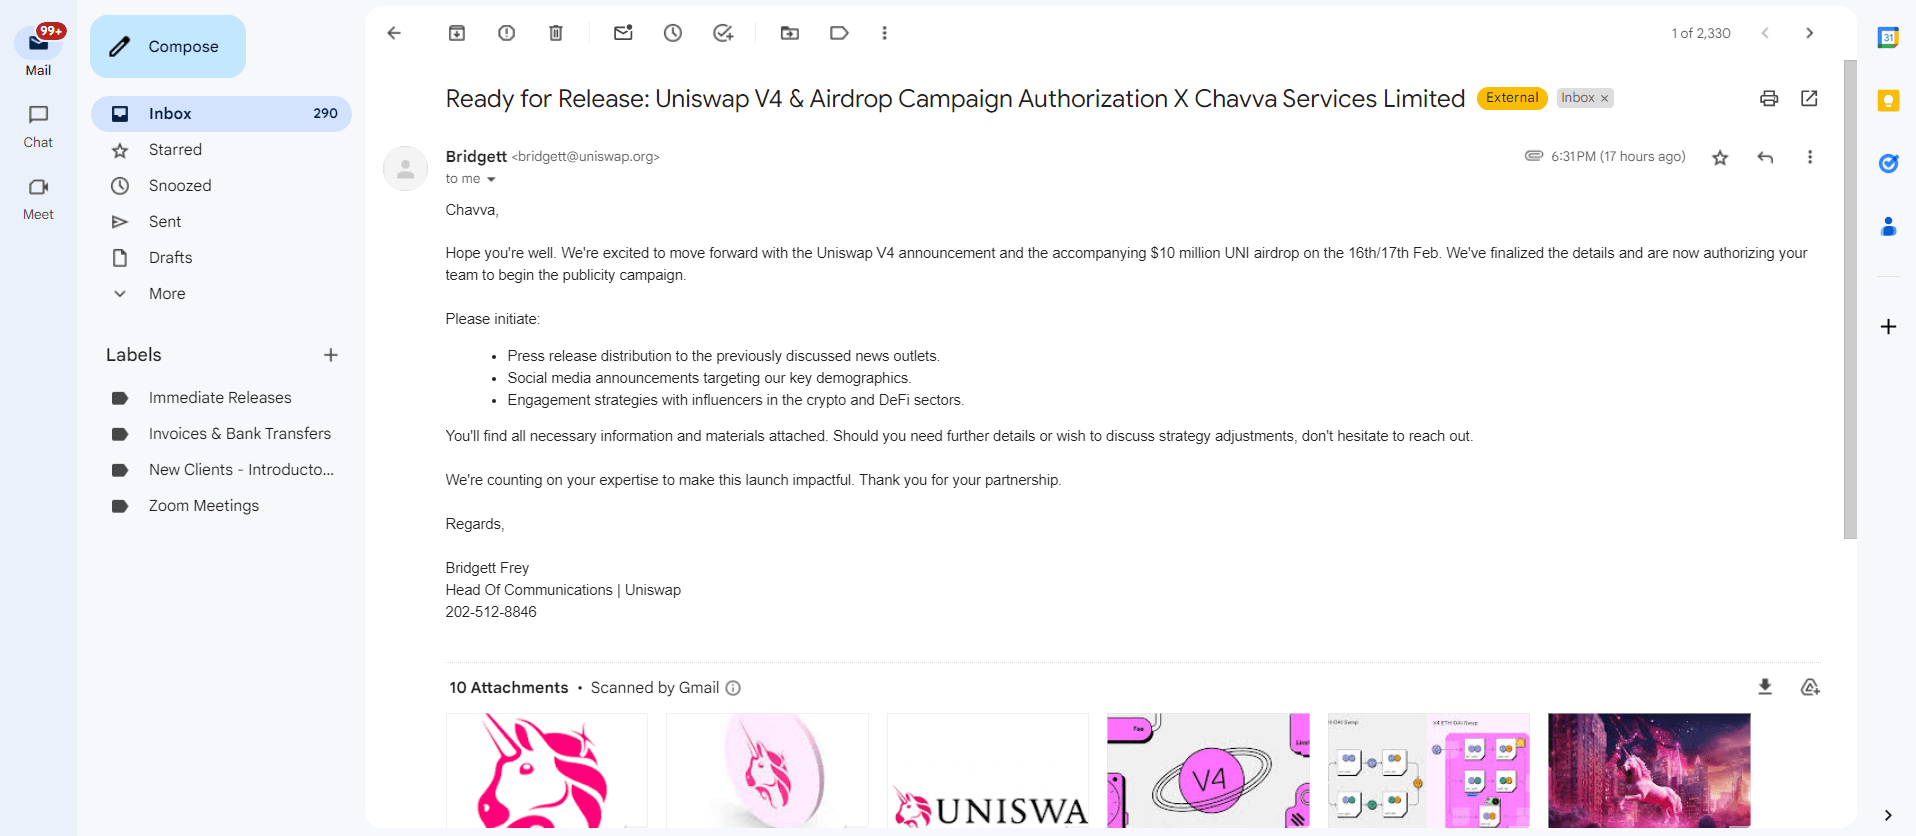 Forged email of Uniswap partnership